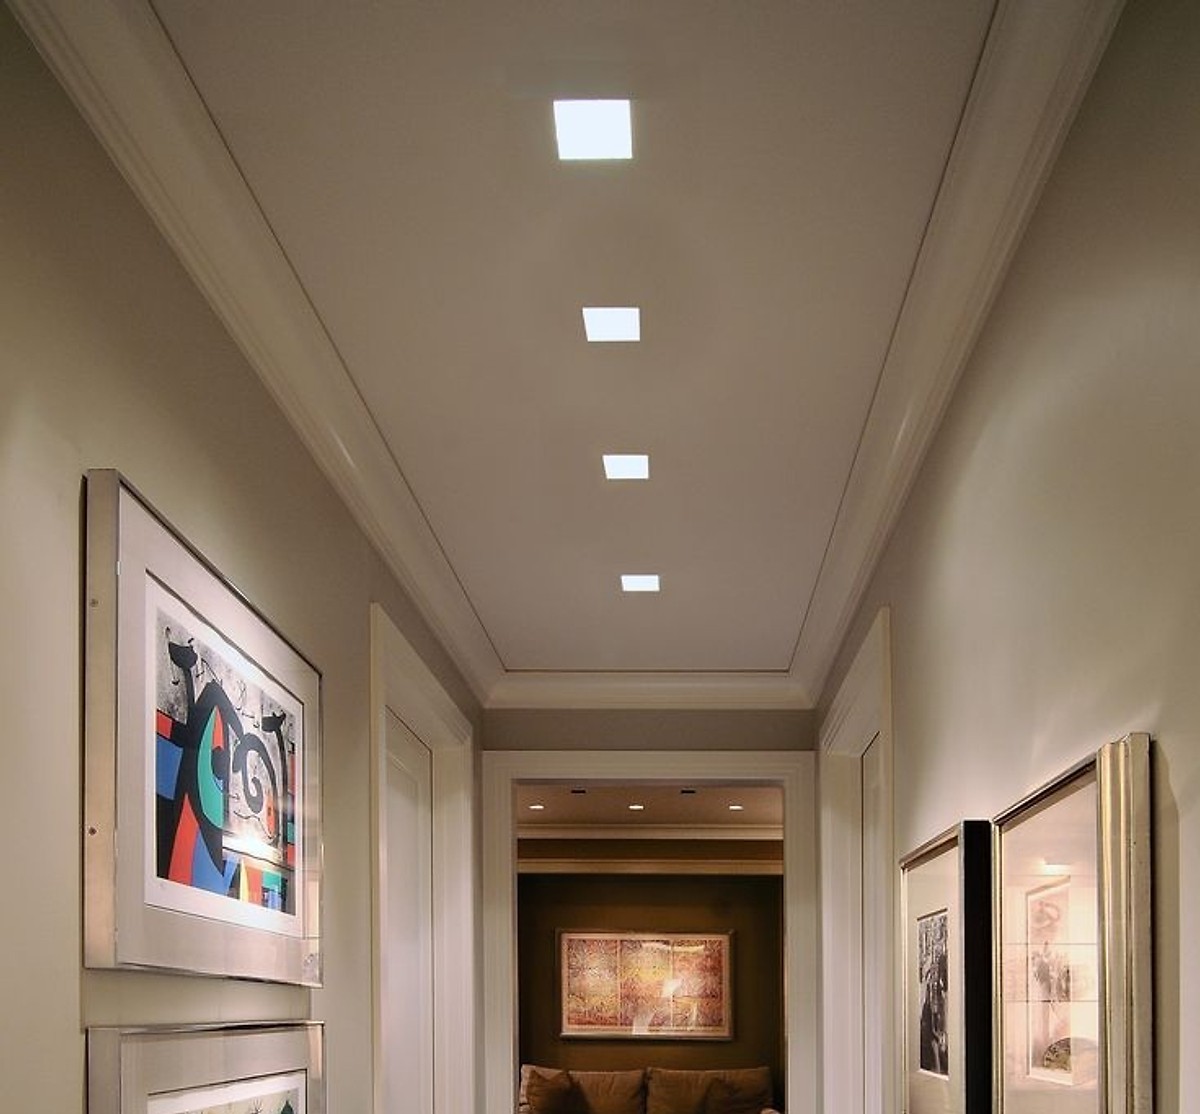 Đèn led âm trần thạch cao là giải pháp chiếu sáng tiết kiệm điện lý tưởng cho nhà ở, văn phòng và cửa hàng thời trang. Với thiết kế đẹp mắt và hiệu suất cao, đèn led âm trần thạch cao của chúng tôi sẽ mang lại ánh sáng tuyệt vời cho không gian của bạn.